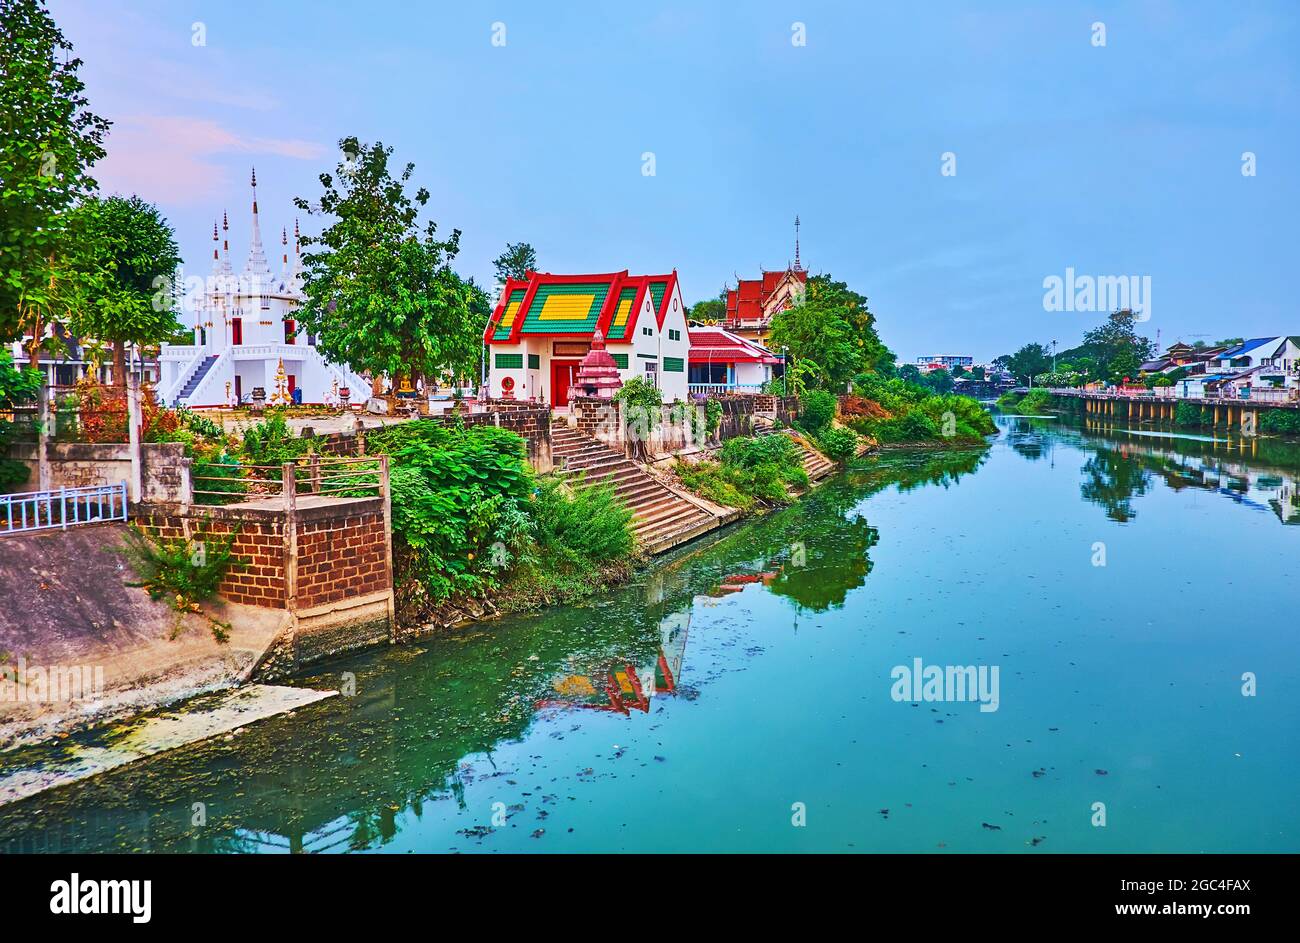 Il pittoresco tempio Wat Ko Walukaram con chedi intagliati bianchi, situato sulla riva verde del fiume Wang a Lampang, Thailandia Foto Stock